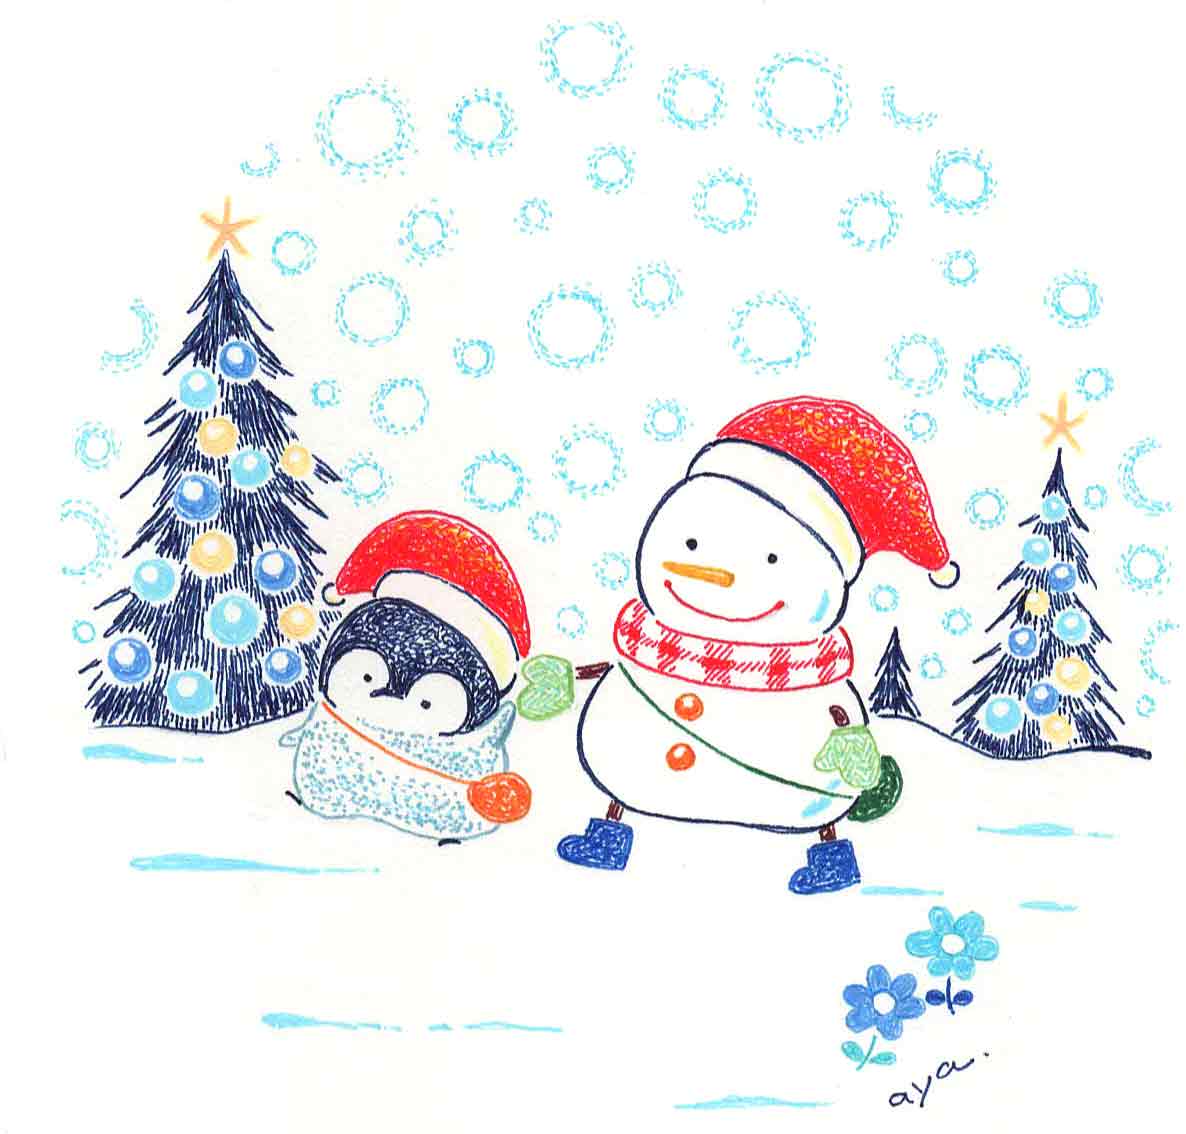 Uzivatel Aya Illustration Na Twitteru クリスマスイラストまとめ メリークリスマス 幸せな気持ちで過ごせますように クリスマス クリスマスイラスト イラストレーション イラスト Christmas Christmas19